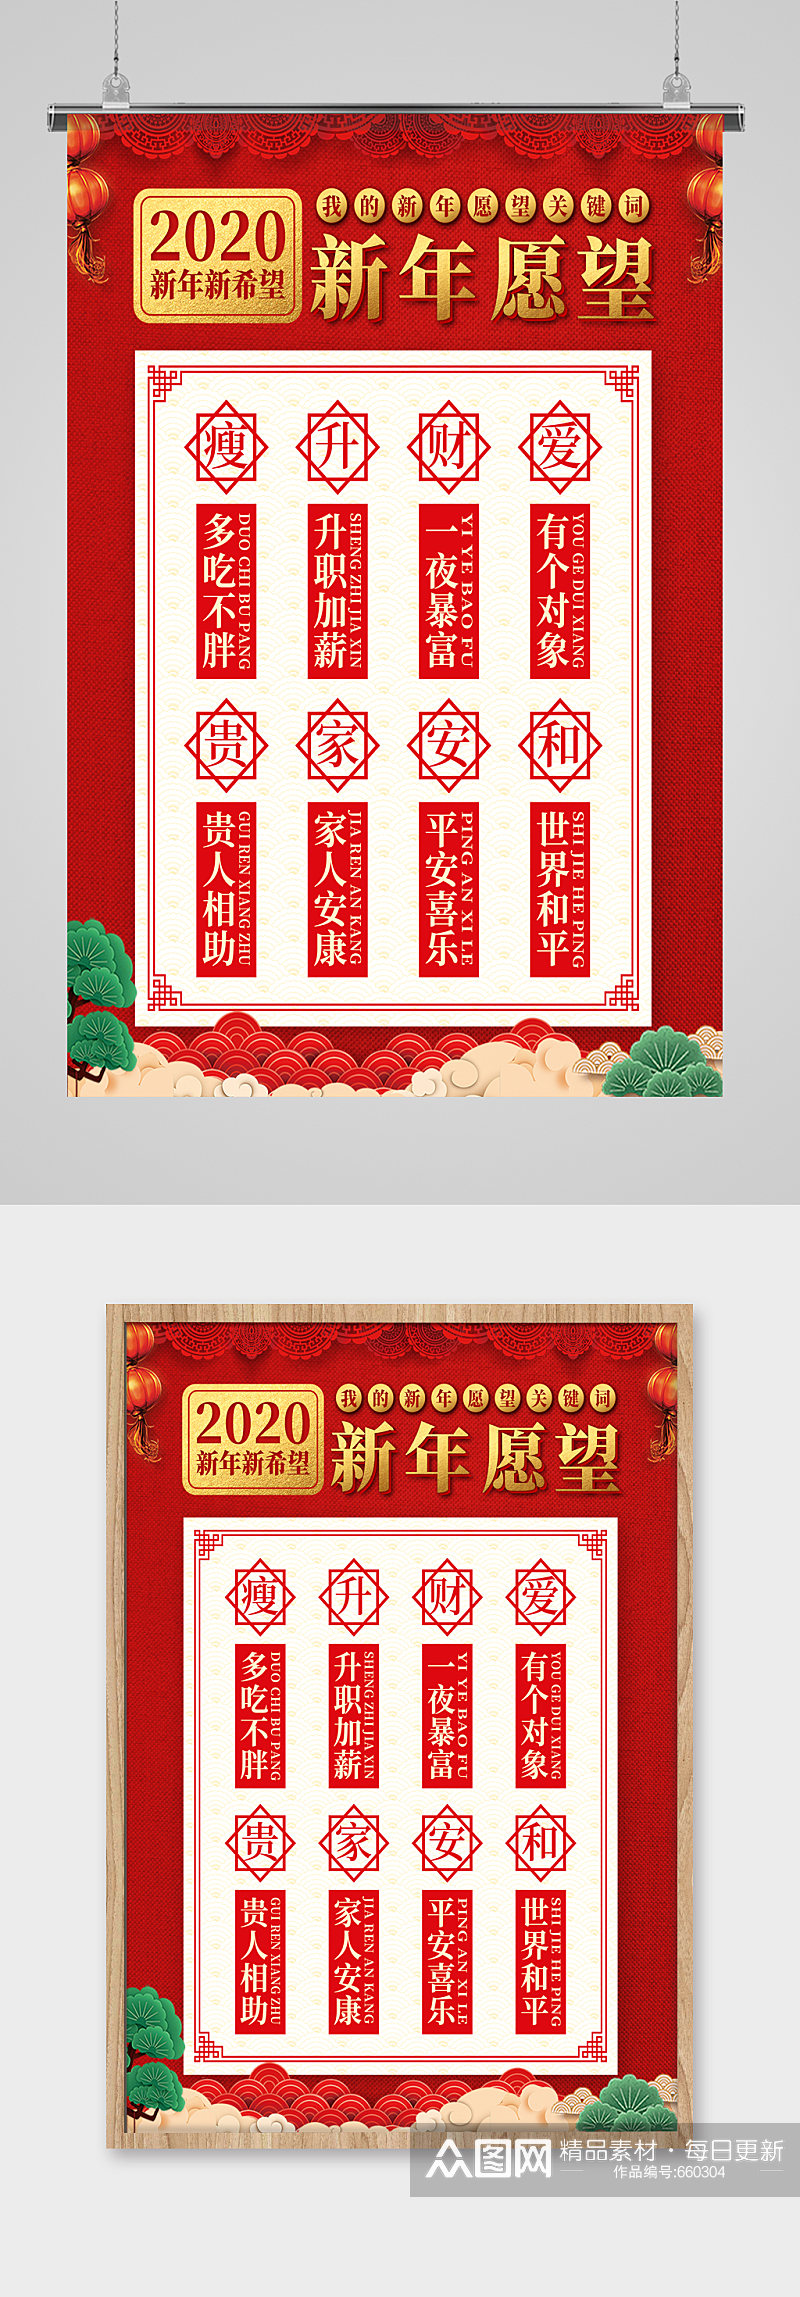 红色喜庆新年愿望清单海报素材